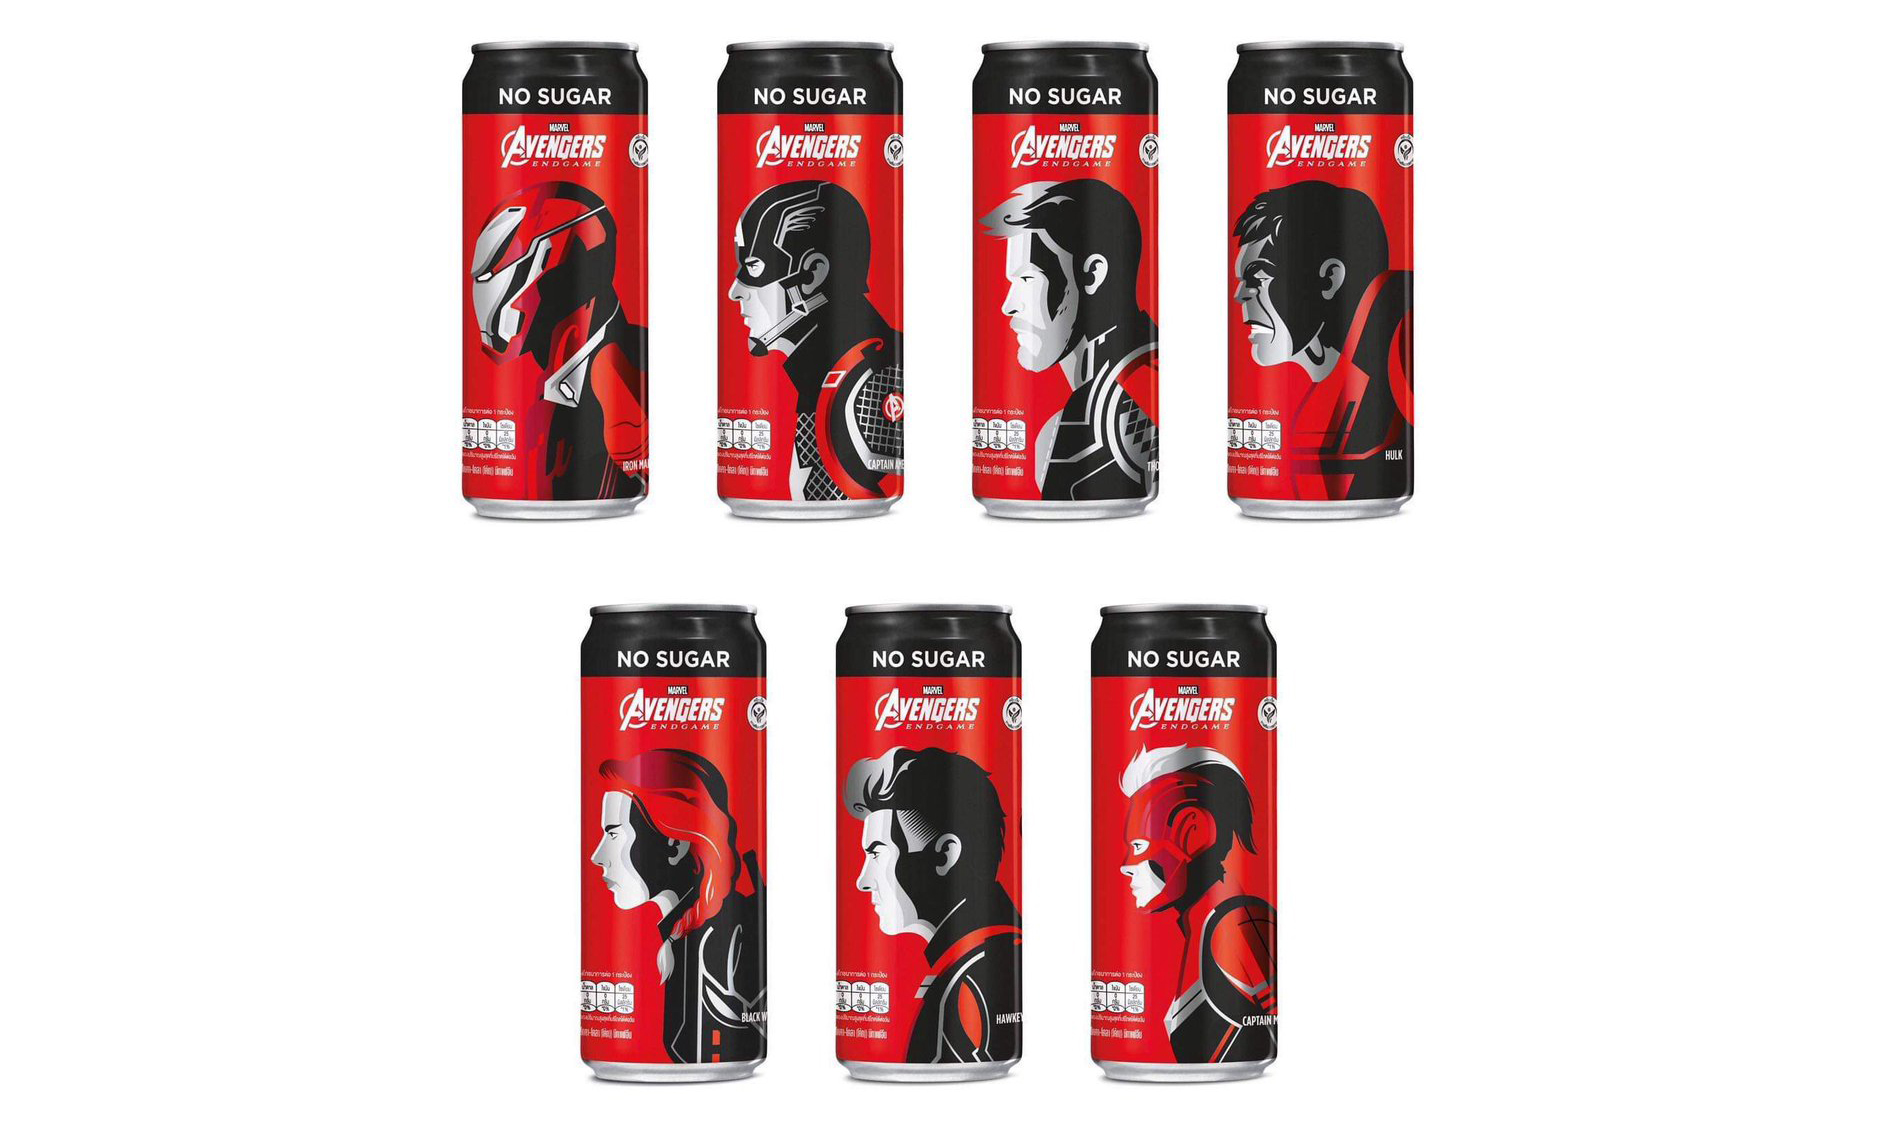 《复仇者联盟 4：终局之战》限定可口可乐罐设计曝光